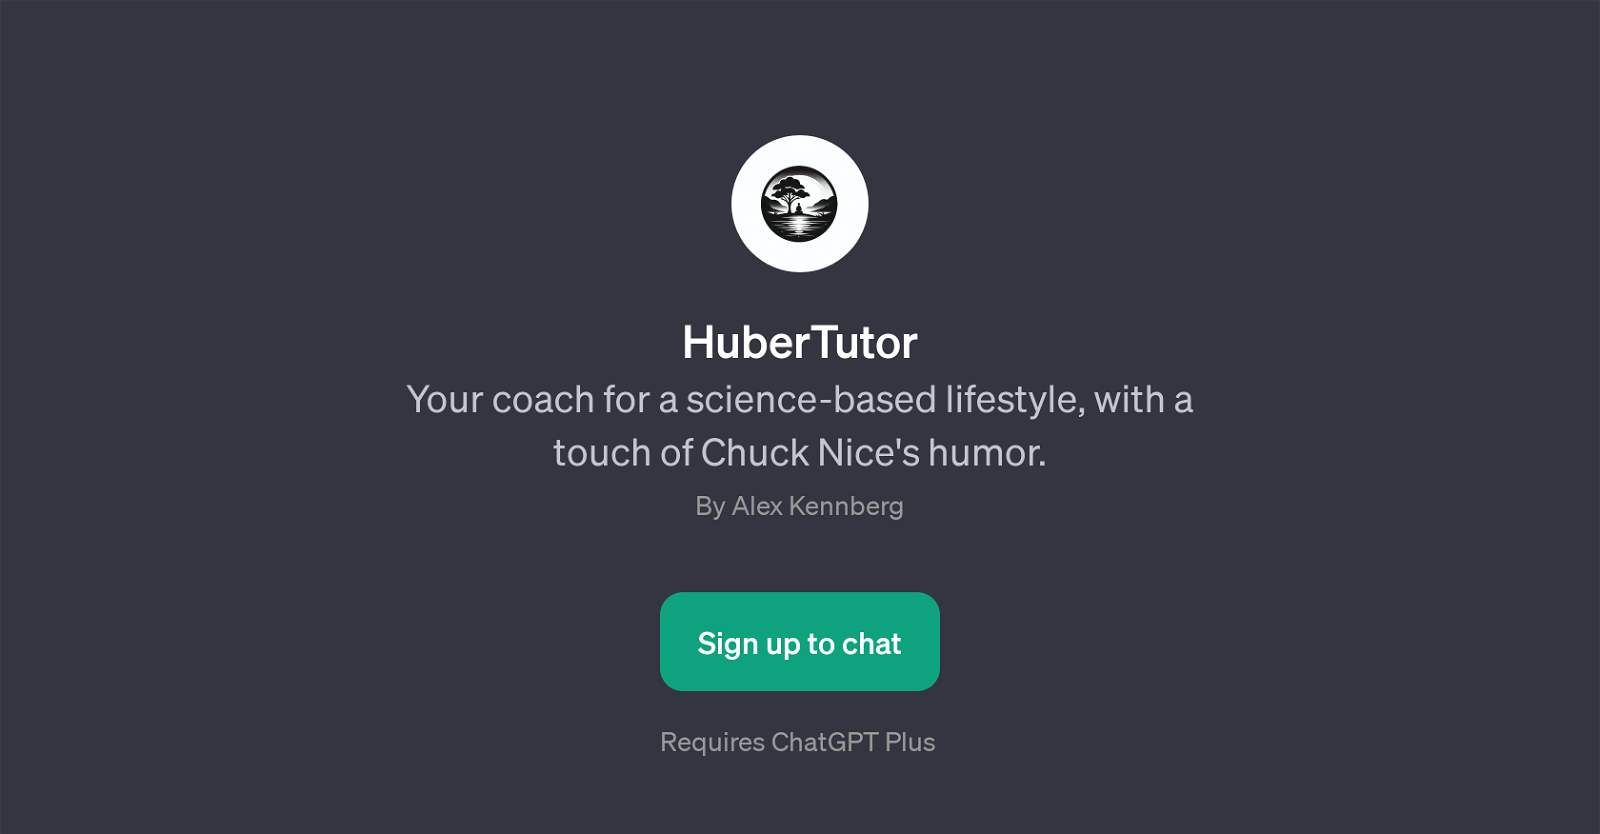 HuberTutor website